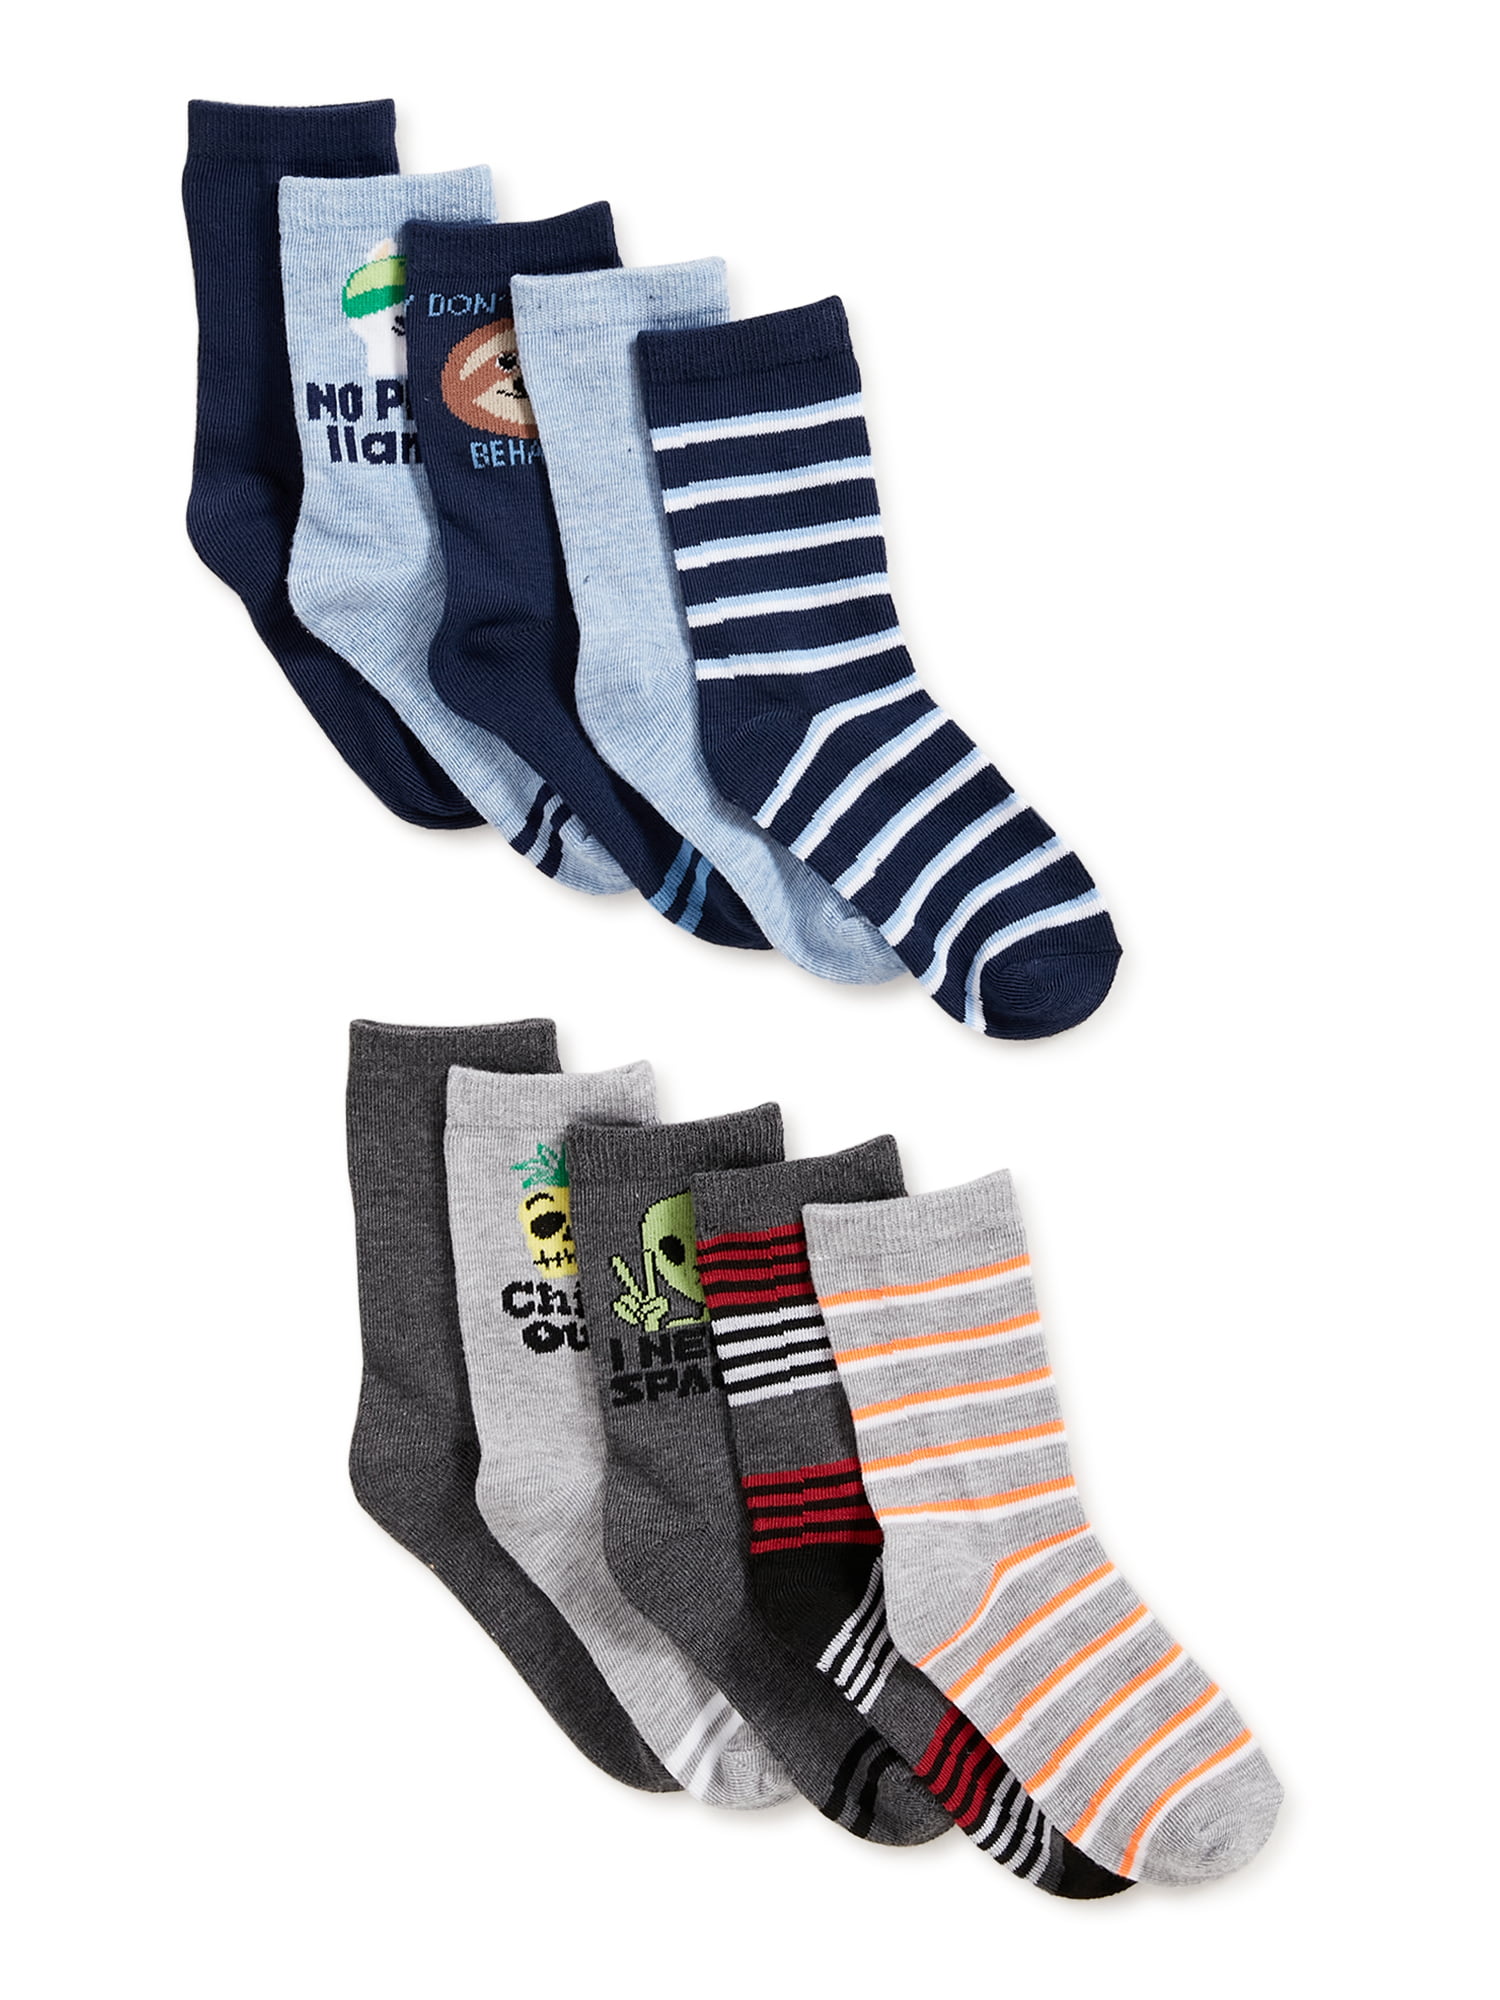 Wonder Nation Little Boy's 10 Pair Crew Socks Shoe SZ S 4.5-8.5 Assorted Colors 